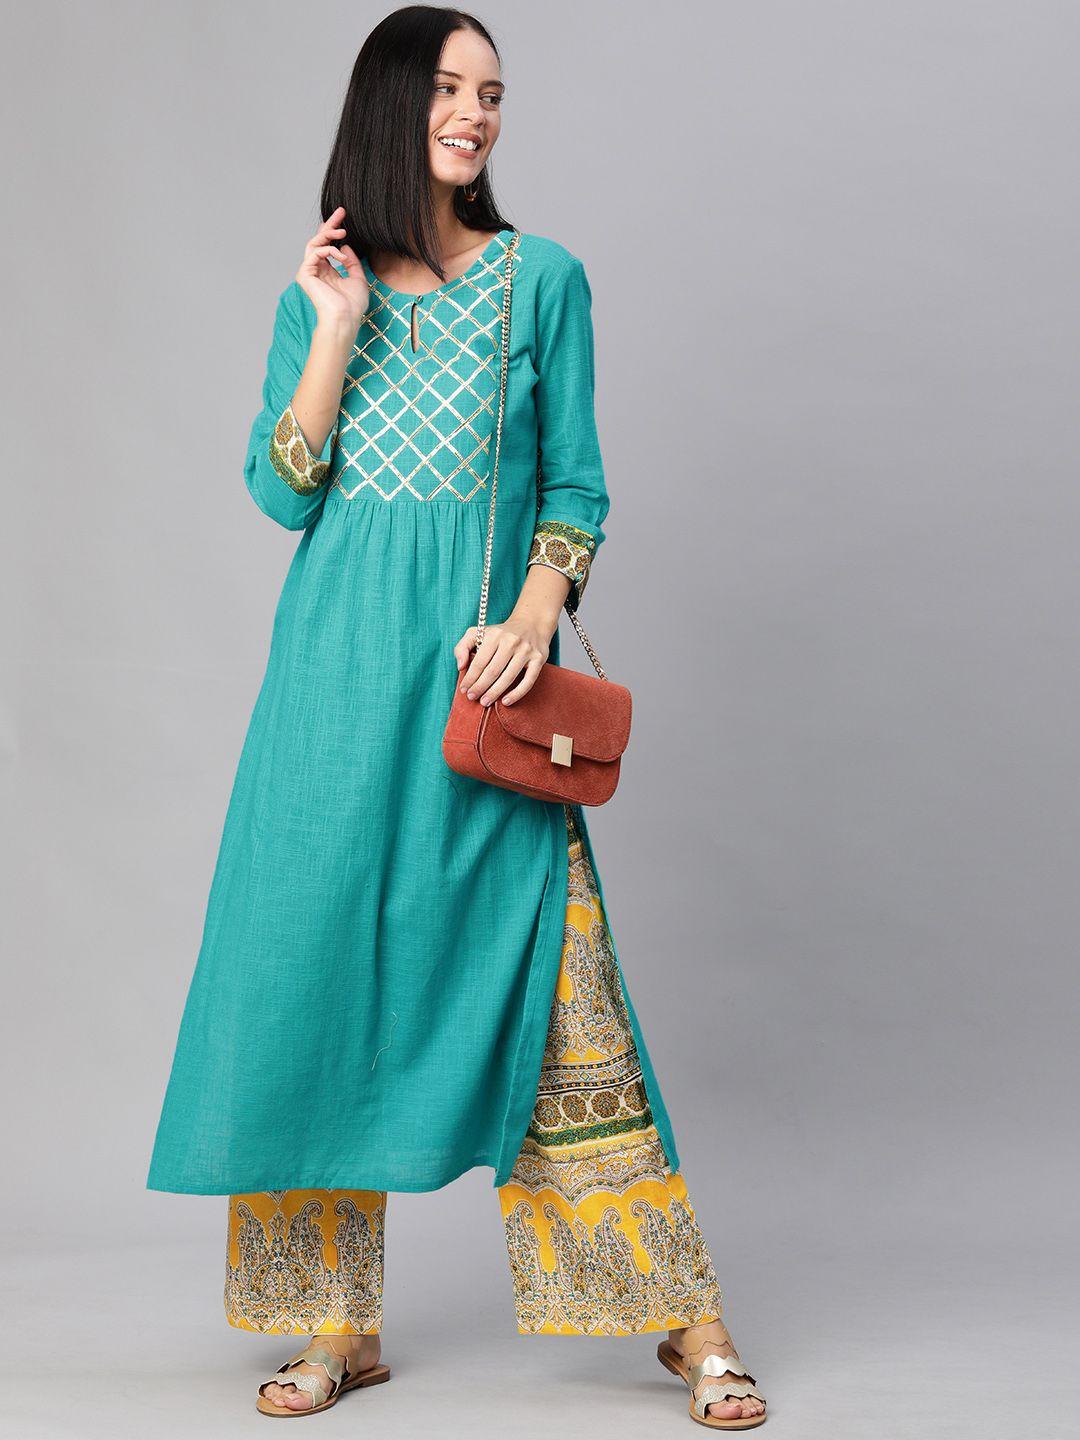 yash gallery women turquoise blue & mustard yellow yoke design kurta with palazzos